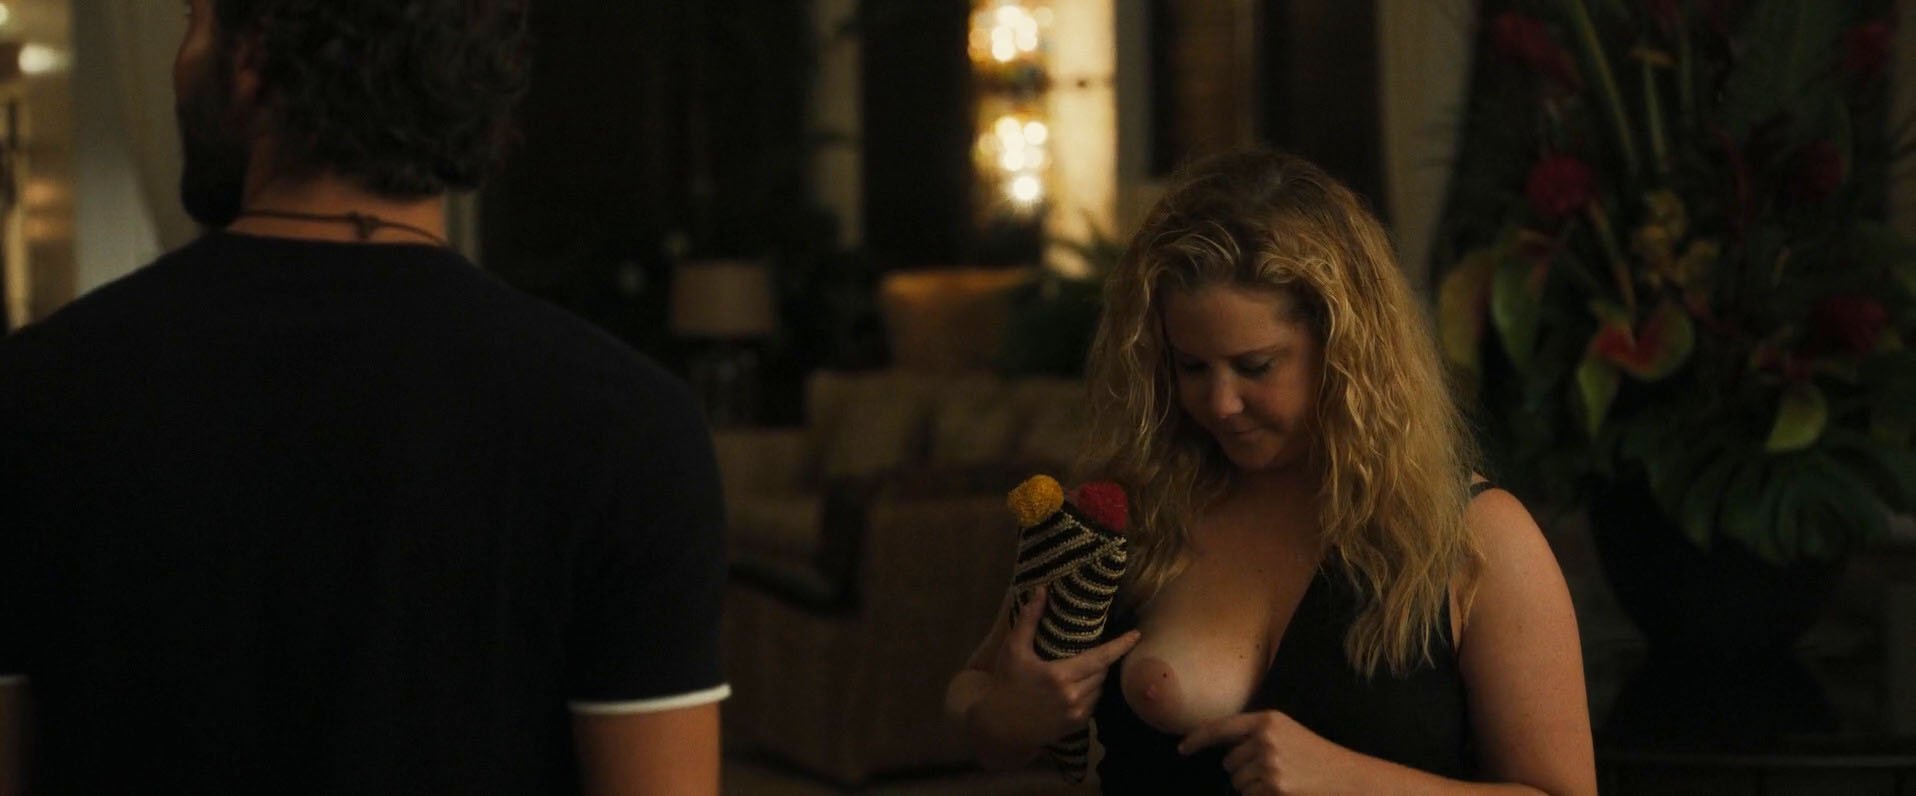 Nude amy movie schumer Amy Schumer